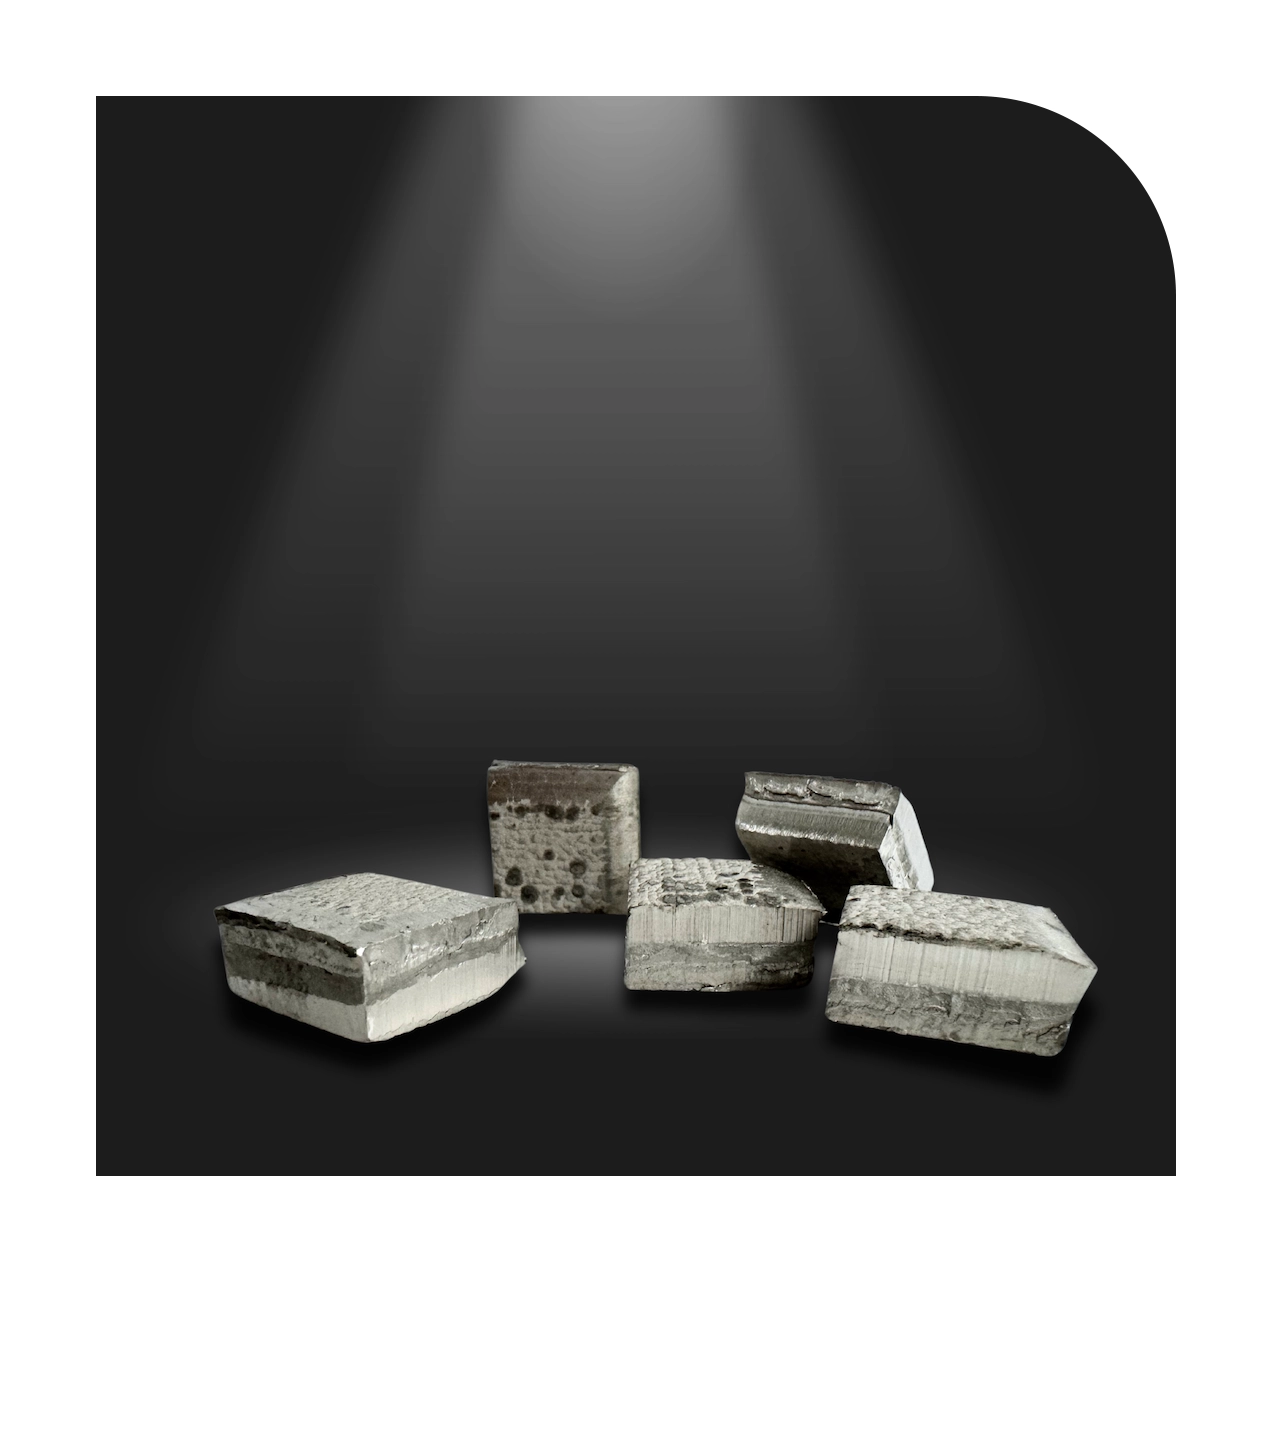 Nickel Squares 1x1, hochreines Nickel mit über 99,98% Reinheit, geeignet für elektrolytische Nickelbäder und Gießereianwendungen. Abmessungen: ca. 25 x 25 mm. Verpackung: 10 kg Beutel, 25 kg Eimer, 250 kg oder 500 kg Fässer. Auch erhältlich in Größen 2 x 2 und 4 x 4.